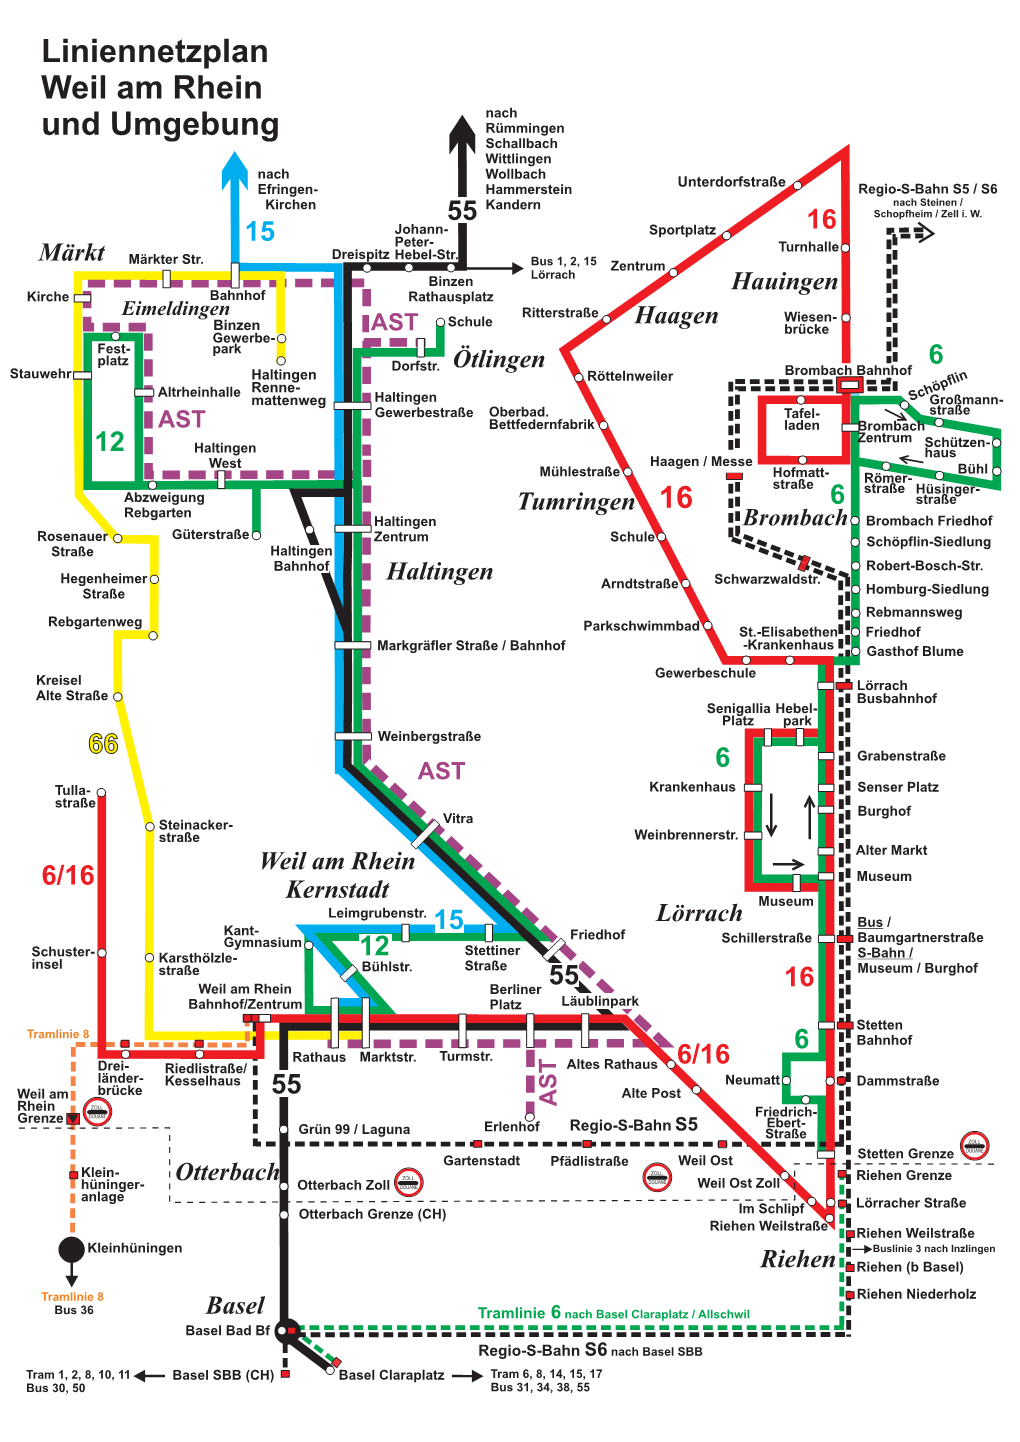 Liniennetzplan Stadtverkehr Weil Am Rhein 2020